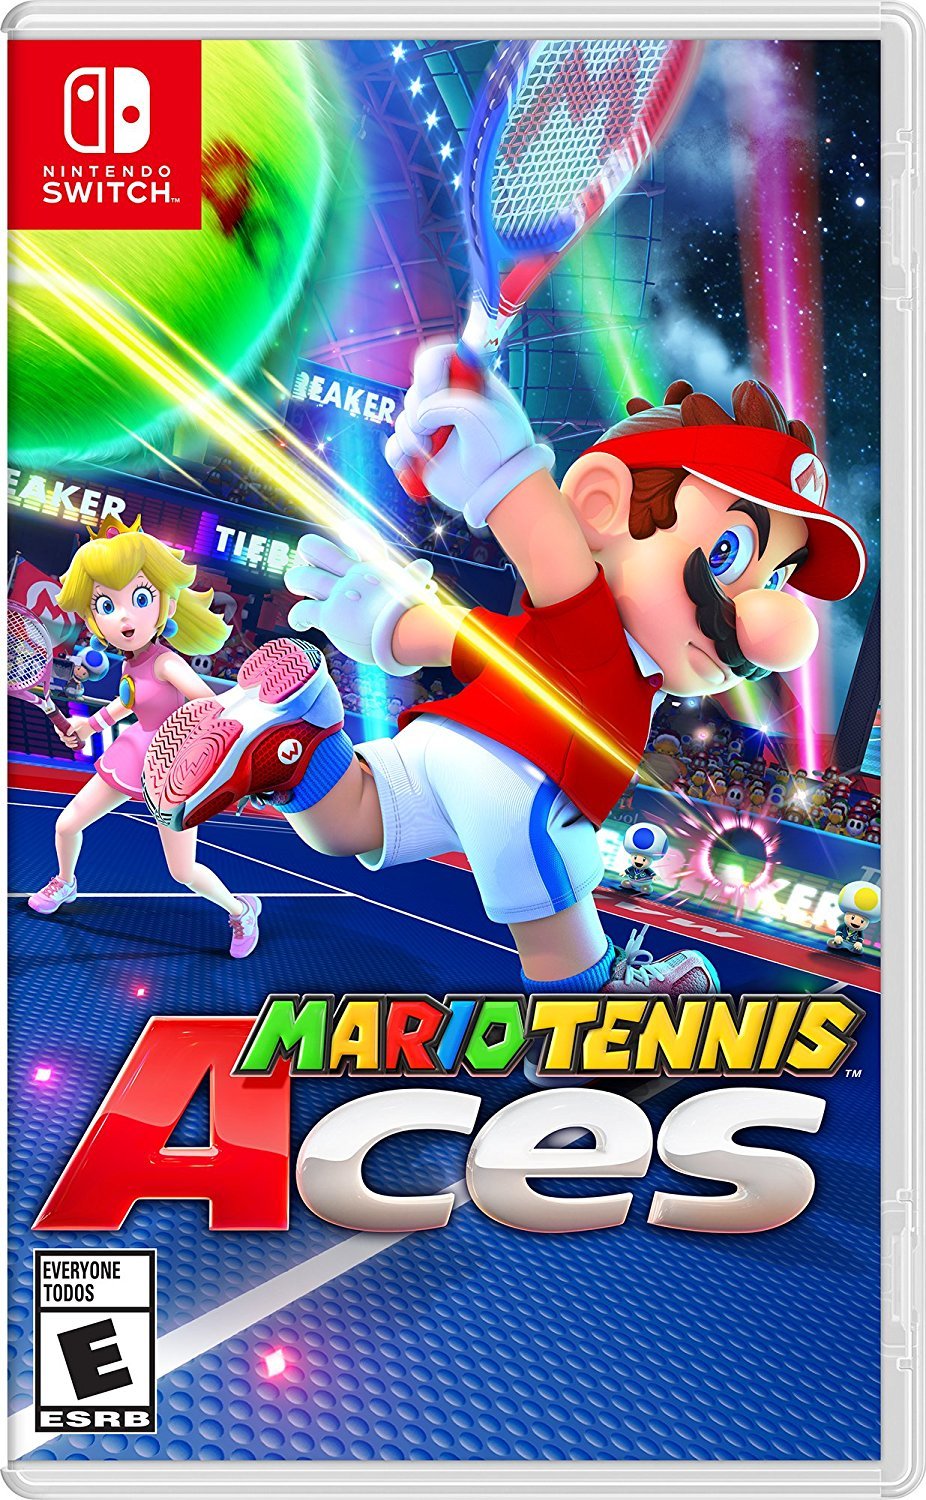 Nintendo Switch Mario Tennis Aces $39.99 at Amazon